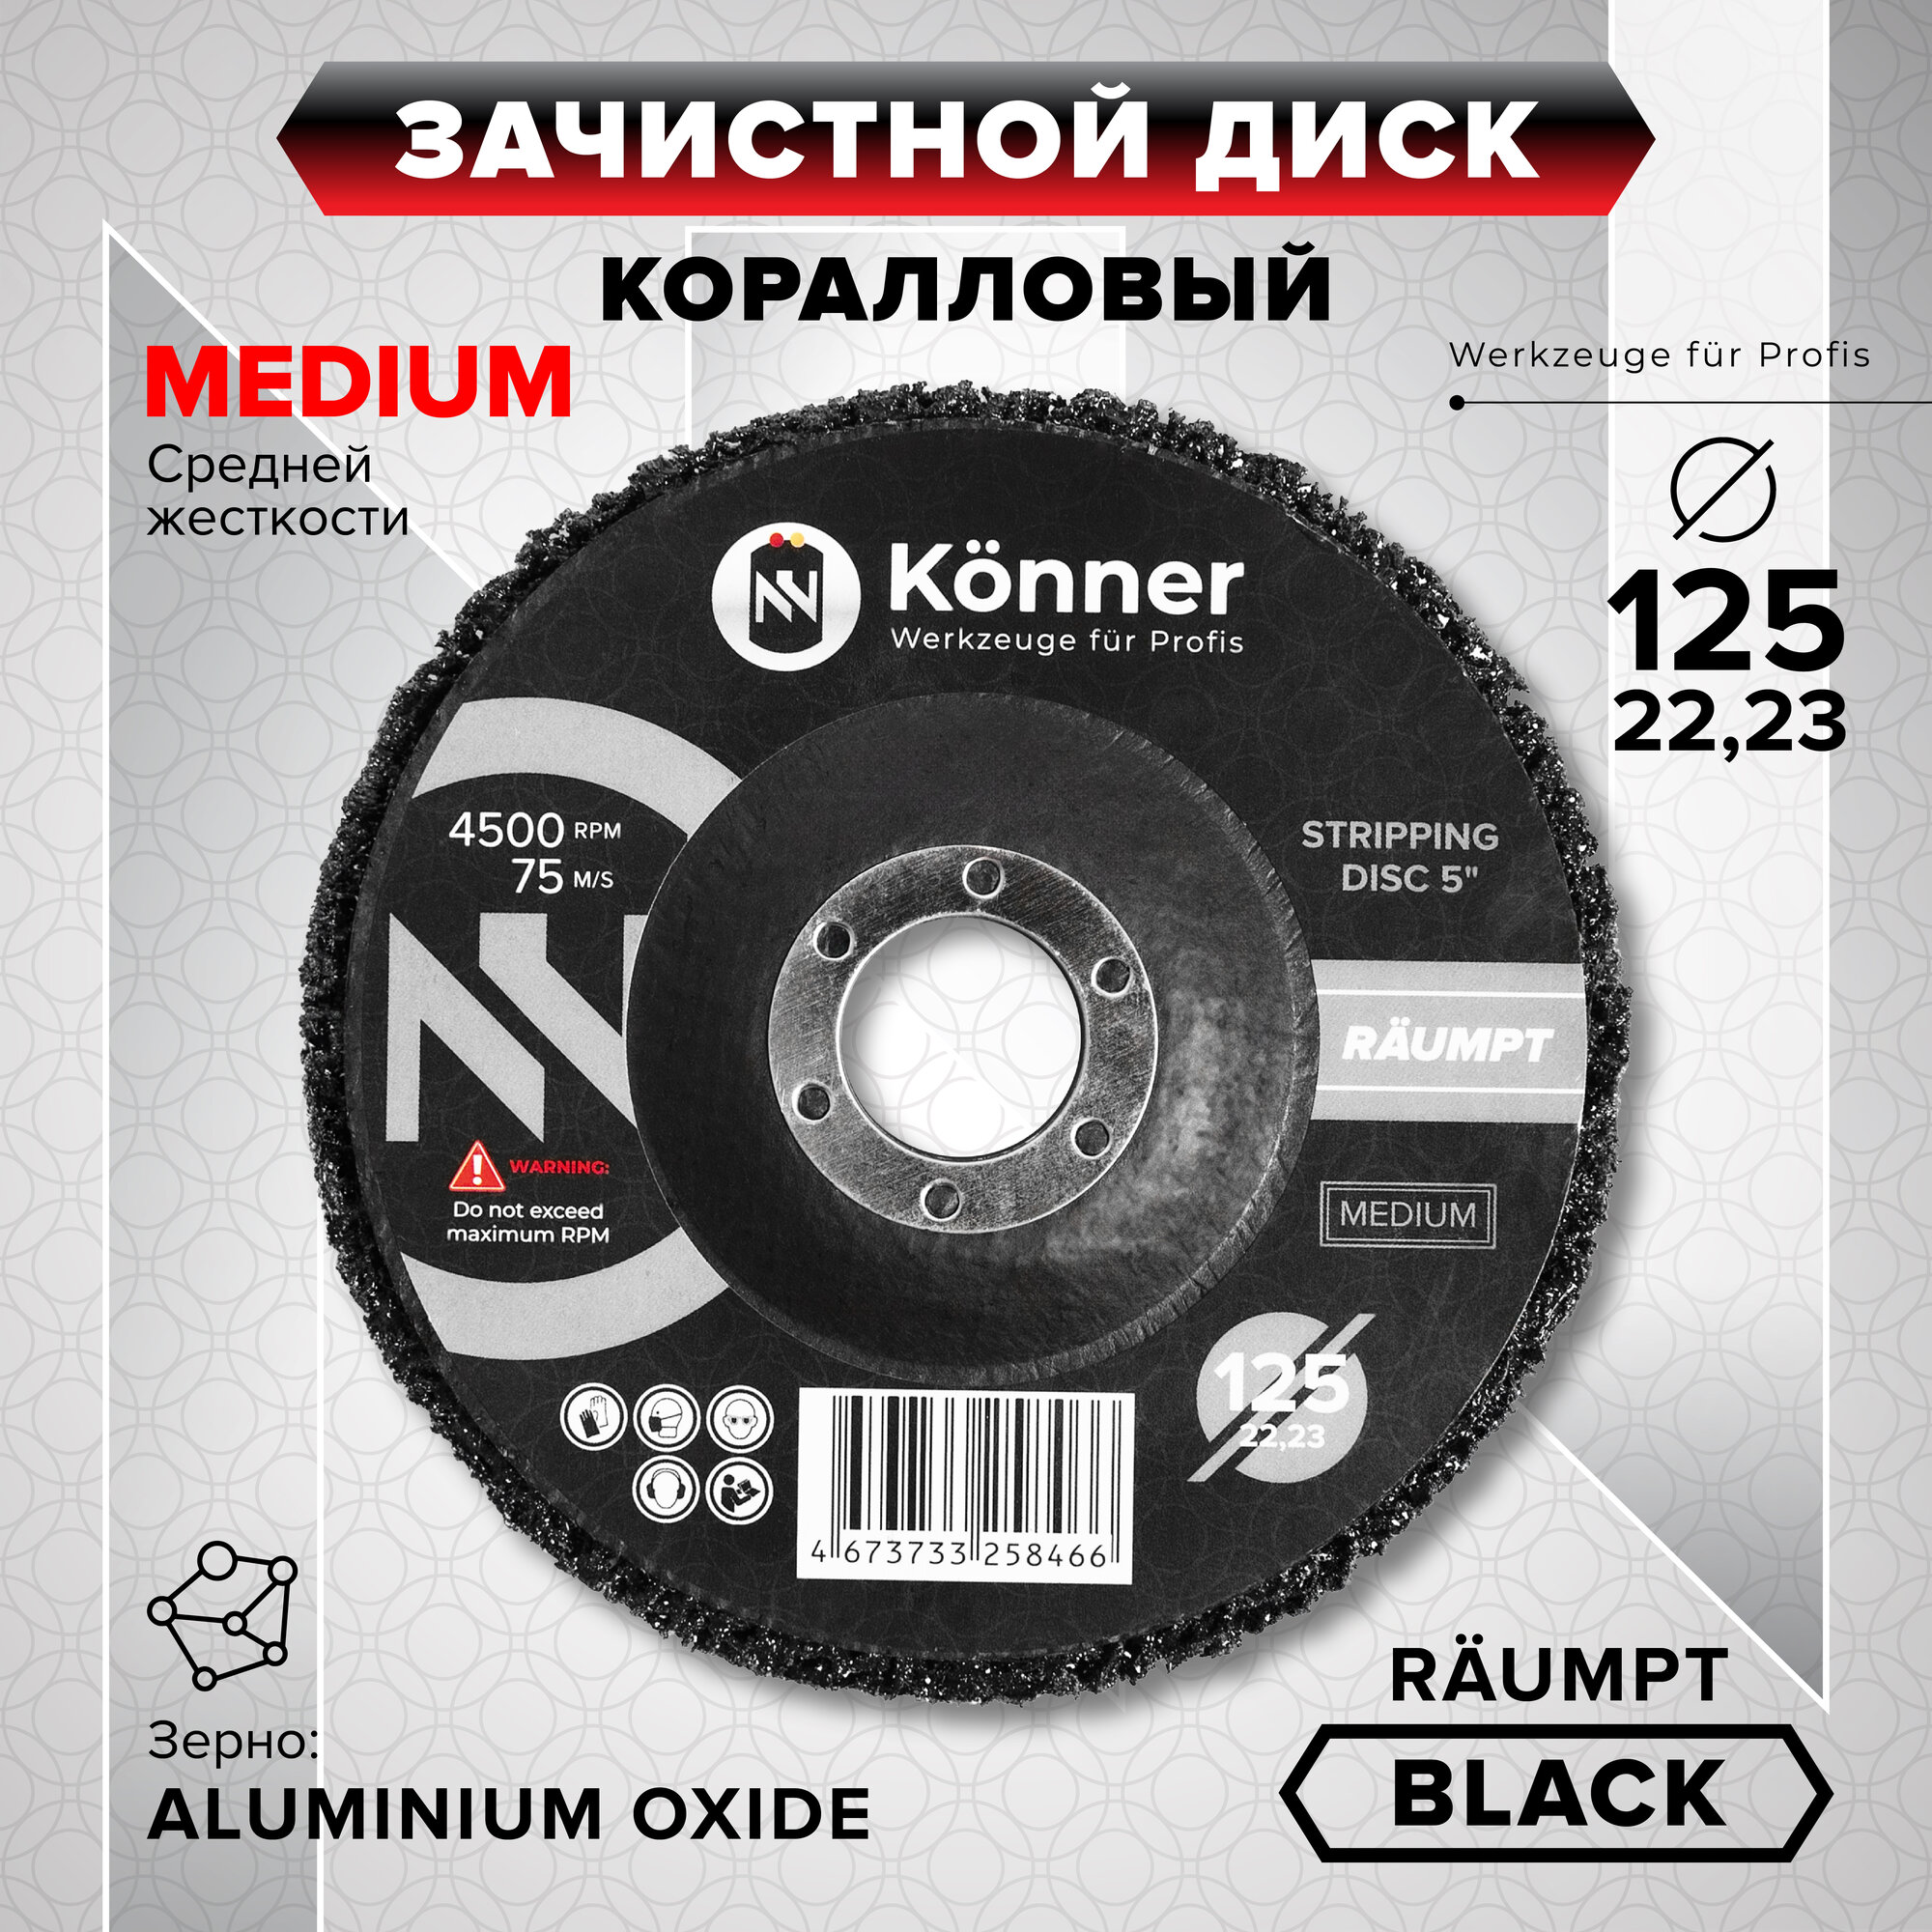 Зачистной диск KÖNNER Räumpt BLACK (MEDIUM) коралловый 125 мм